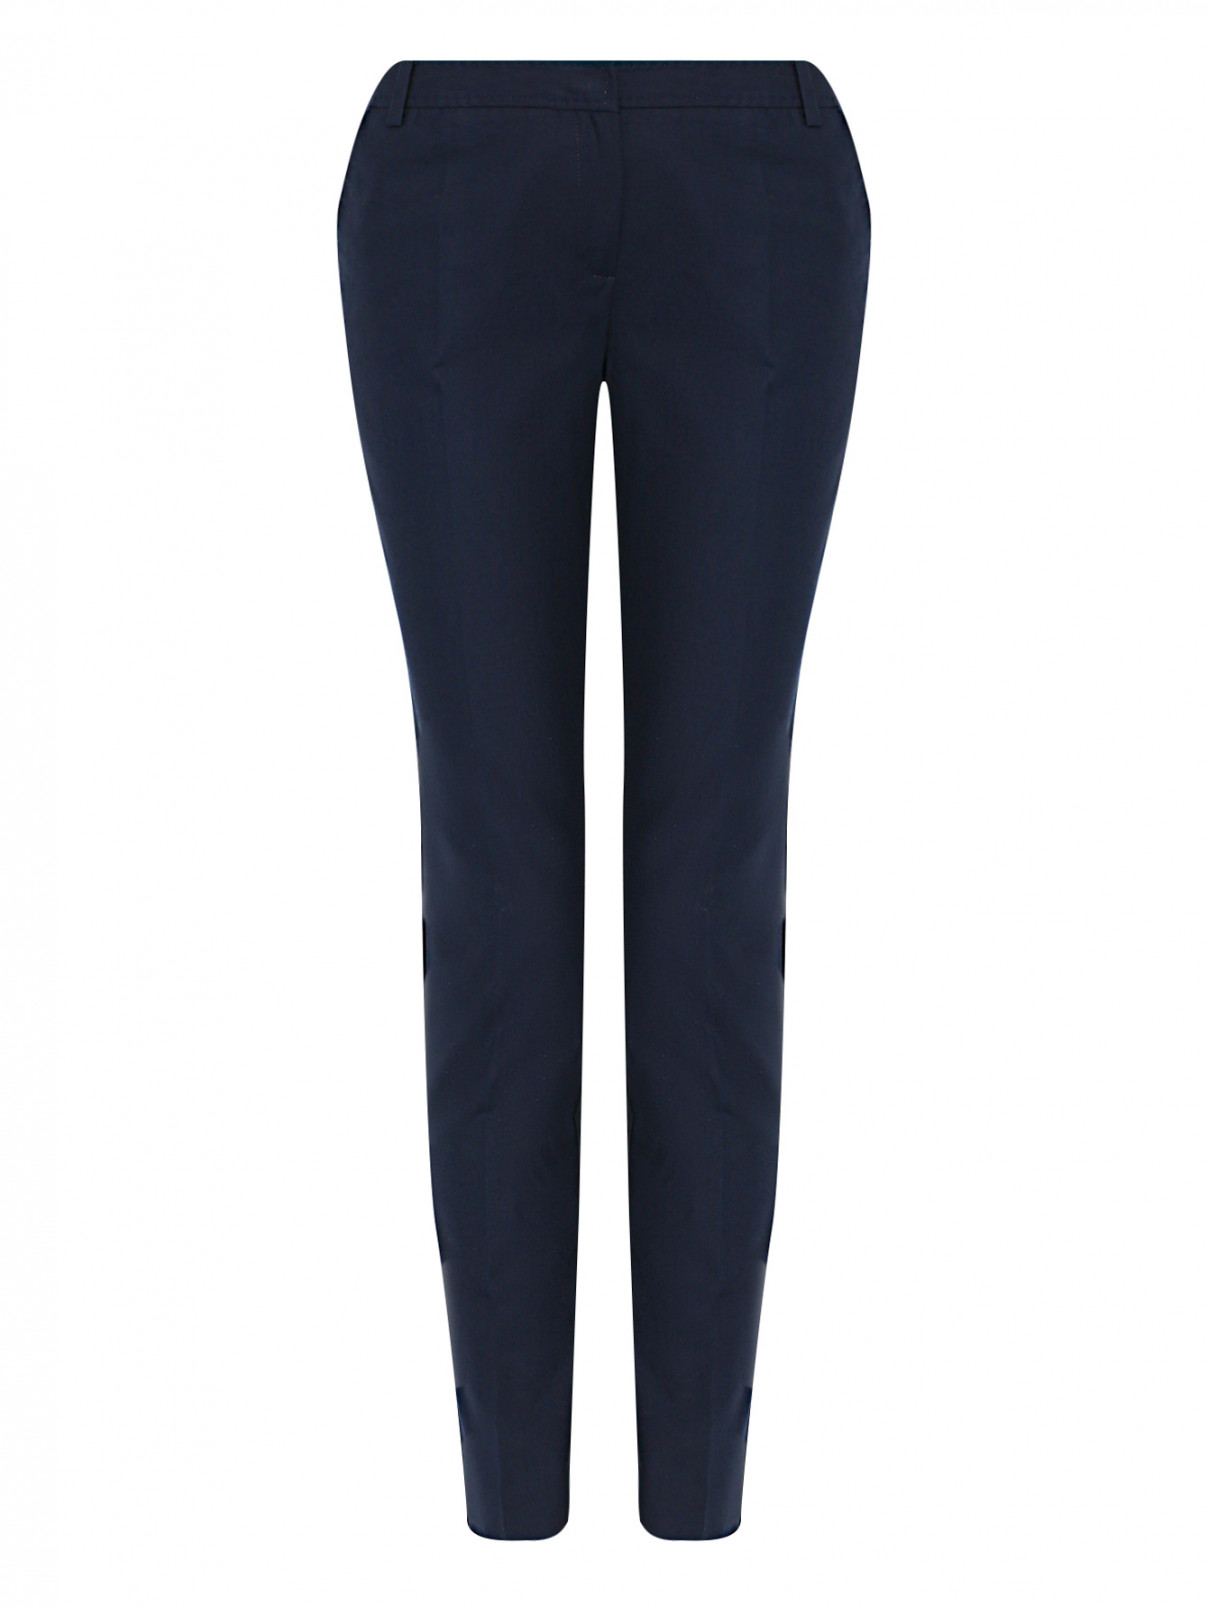 Укороченные брюки из хлопка с карманами Luisa Spagnoli  –  Общий вид  – Цвет:  Синий